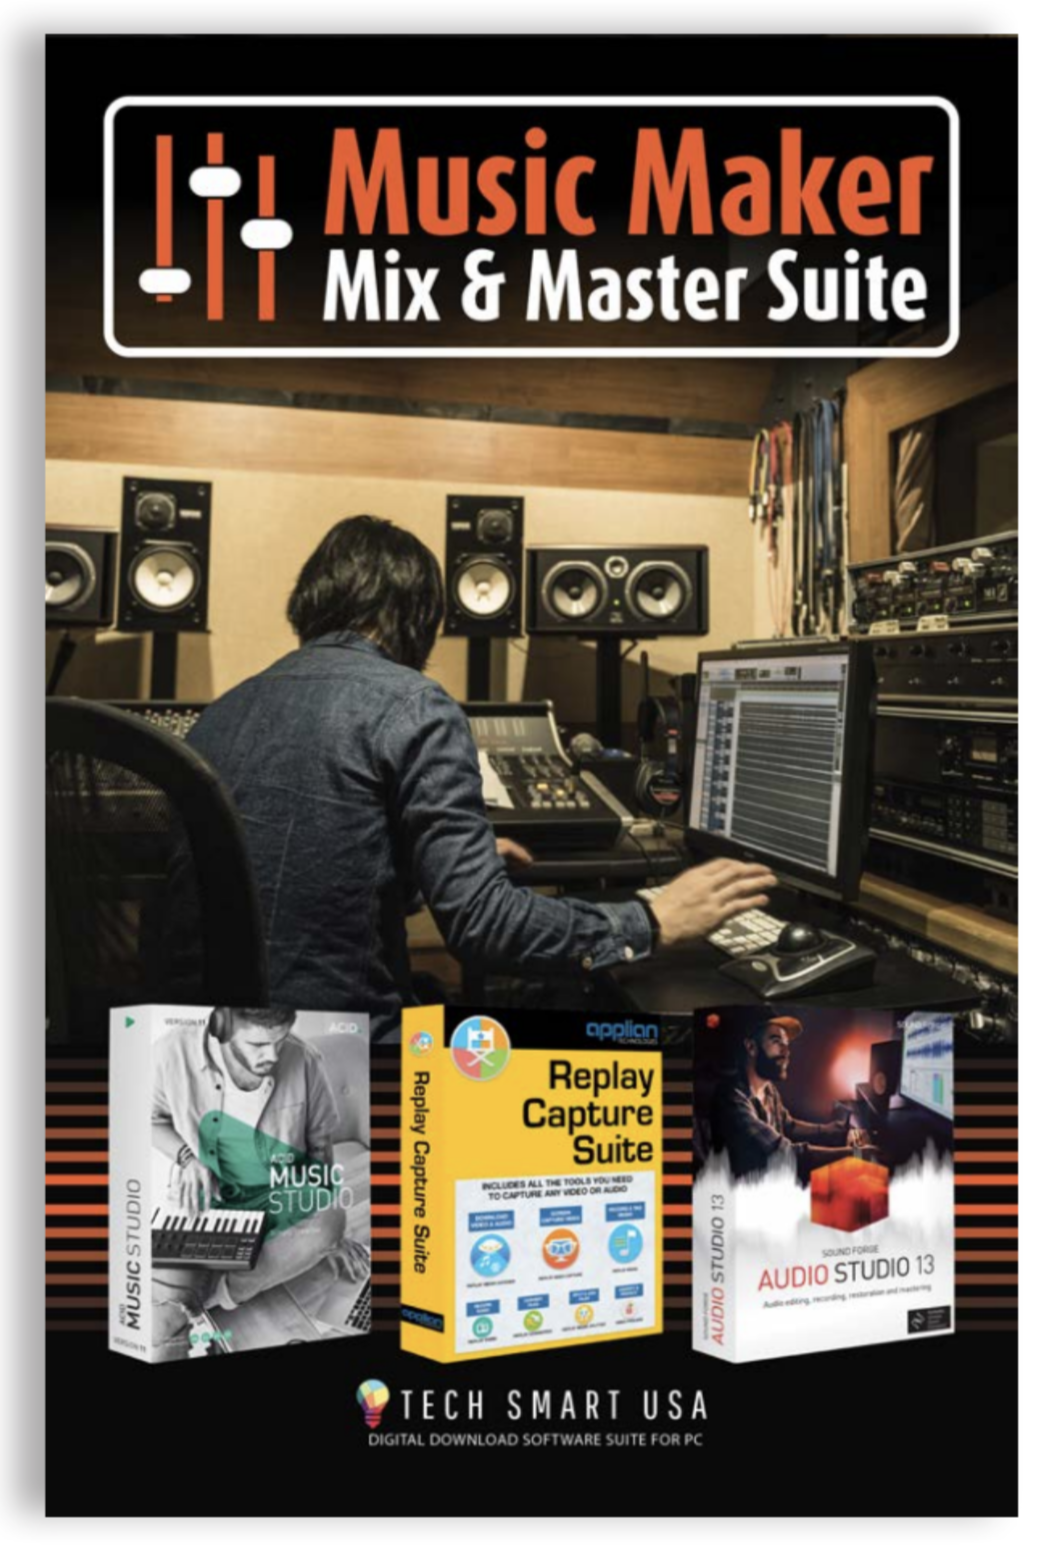 Music Maker Mix & Master Suite - Tech Smart USA